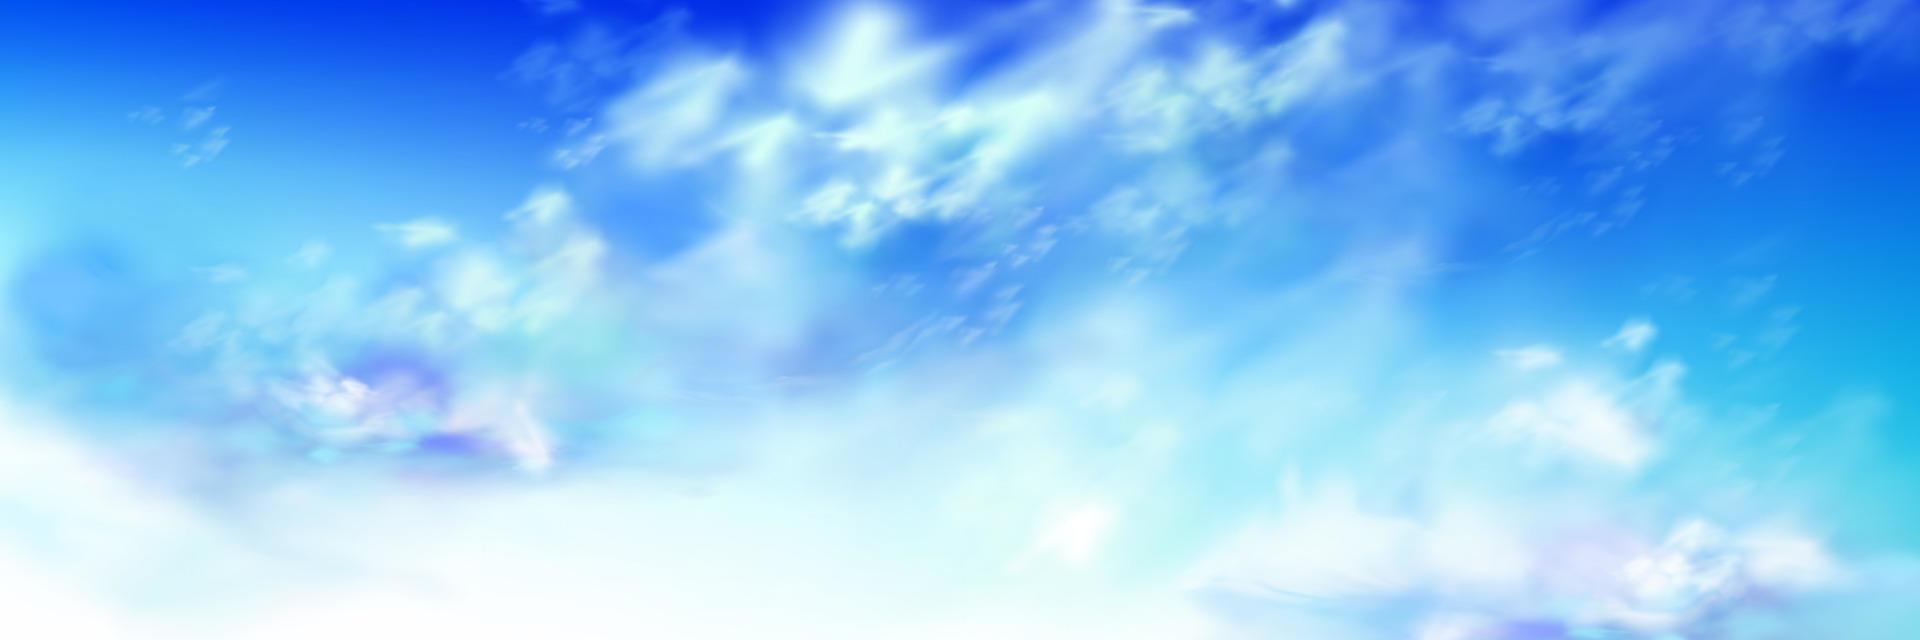 himmel himmel mit blauen und weißen weichen flauschigen wolken vektor